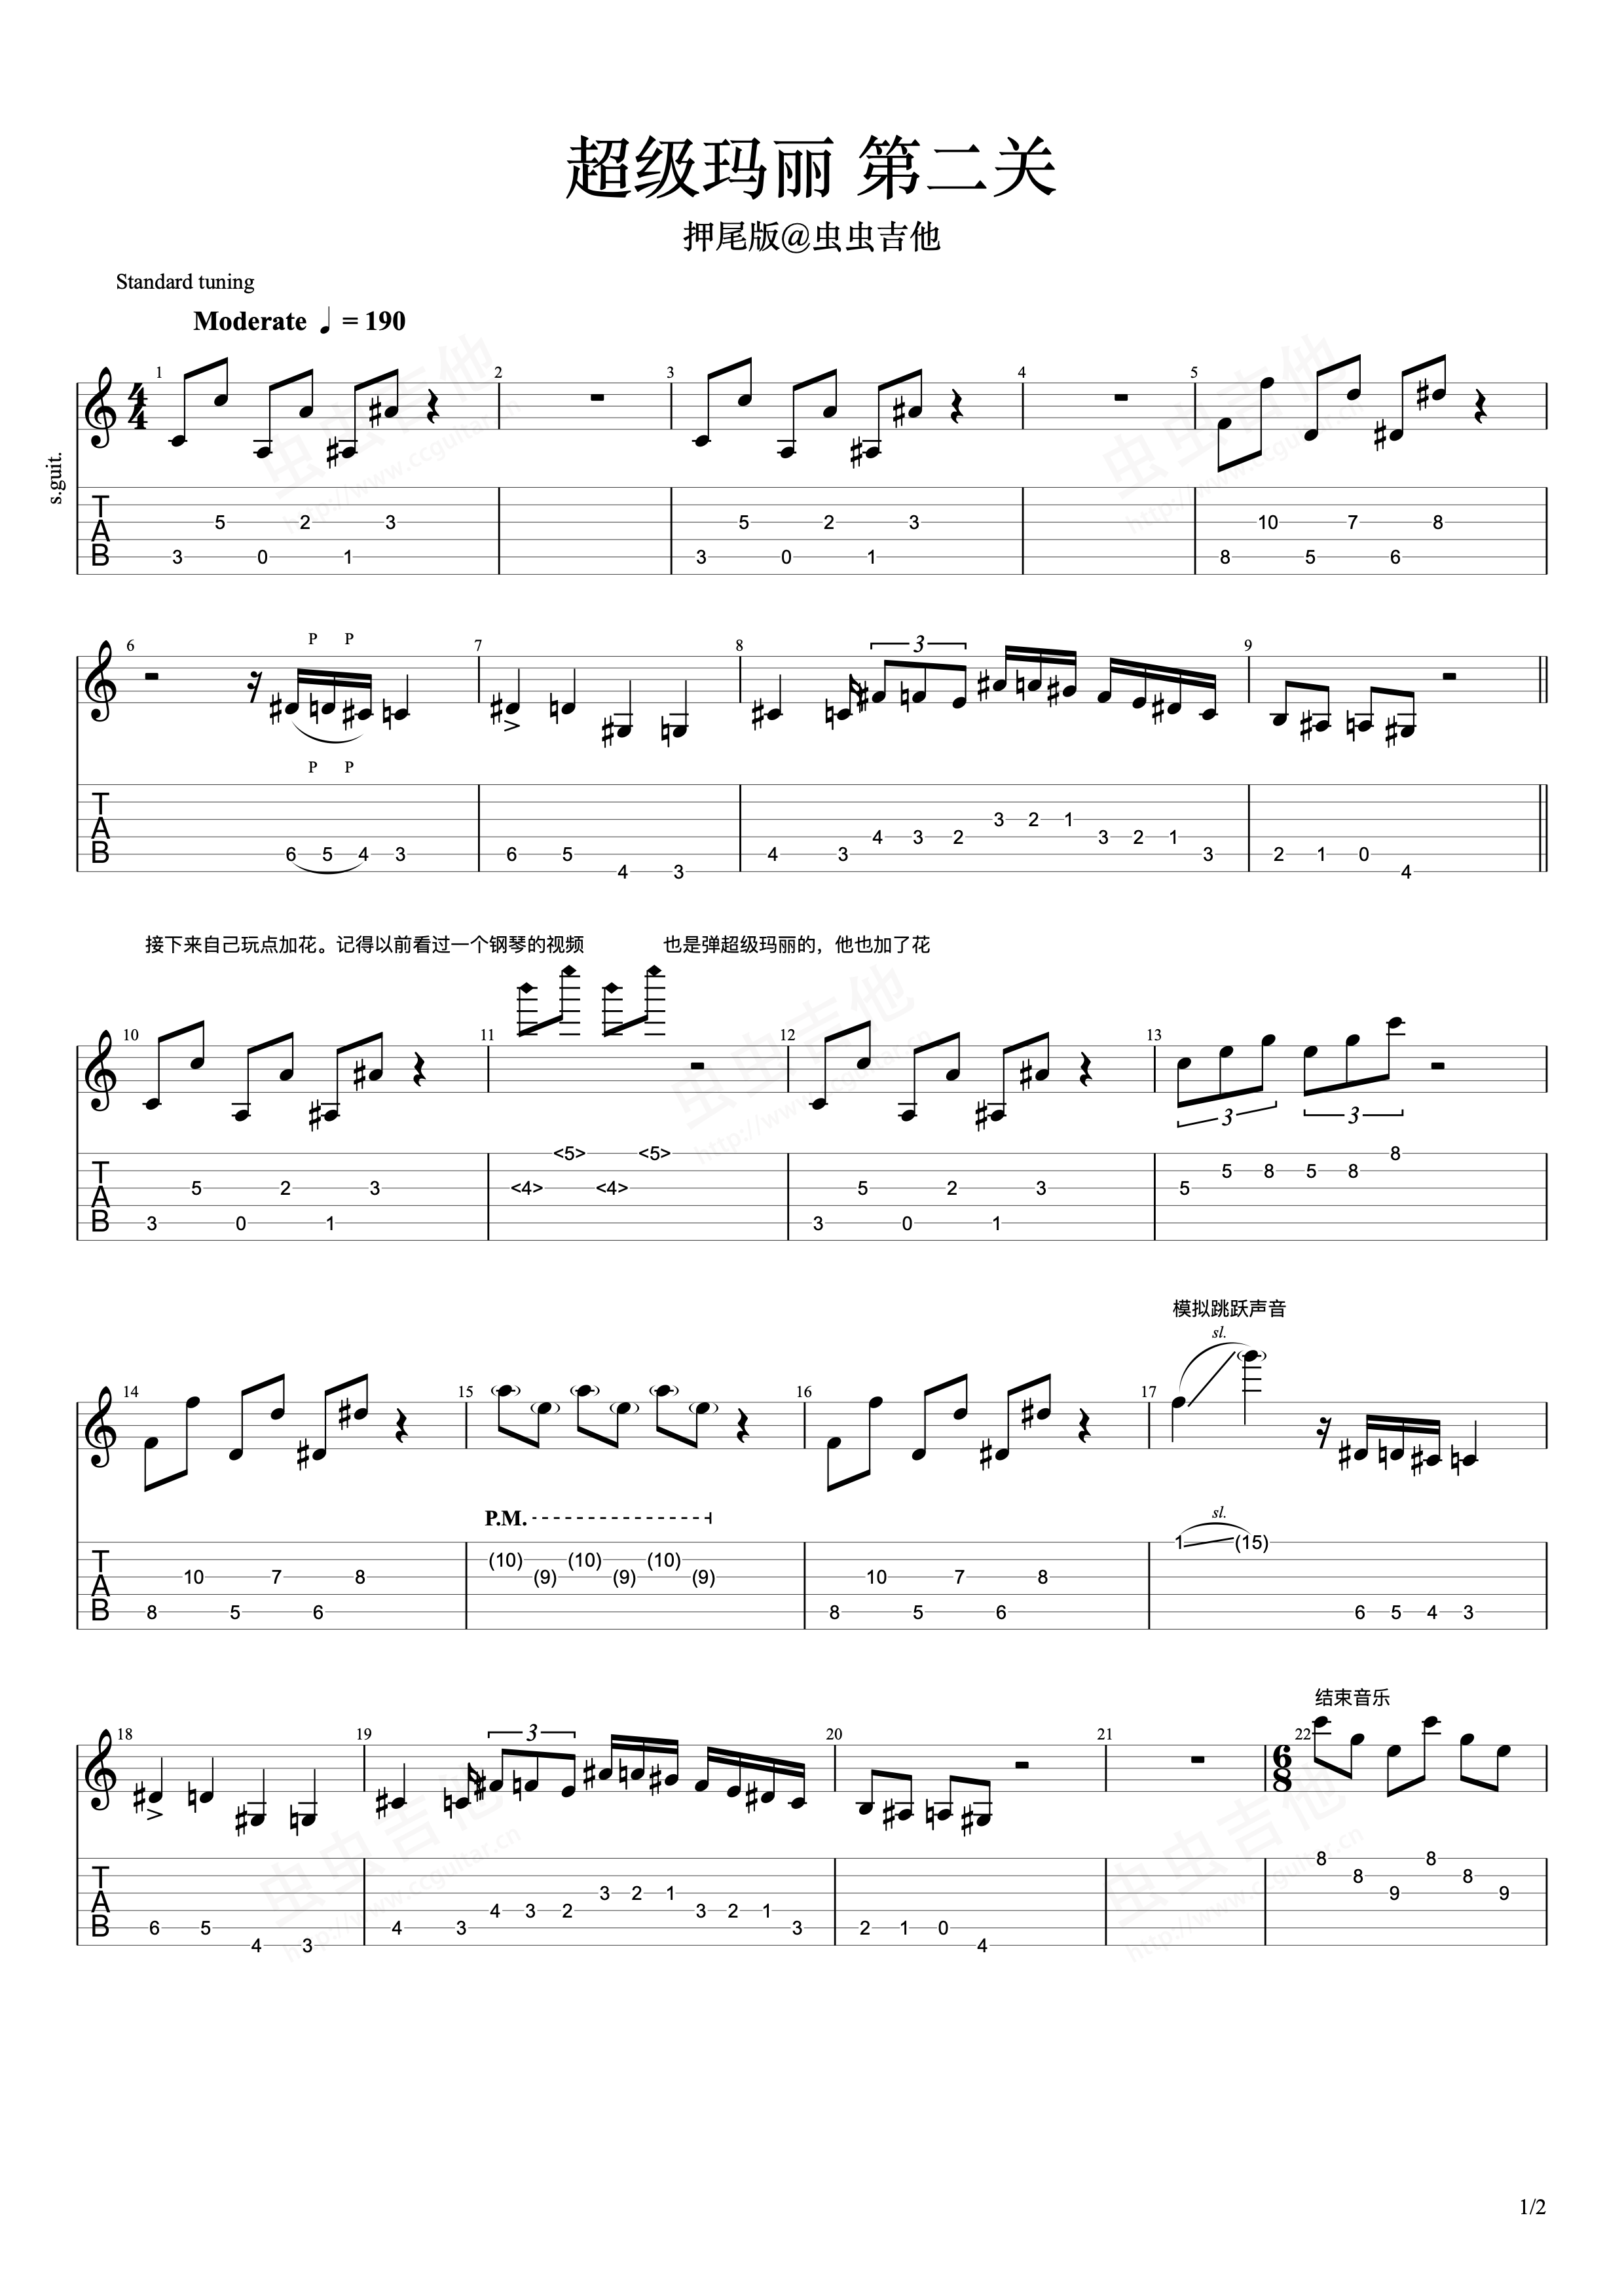 超级玛丽主题曲-超级马力欧兄弟主题曲-简单版-钢琴谱文件（五线谱、双手简谱、数字谱、Midi、PDF）免费下载